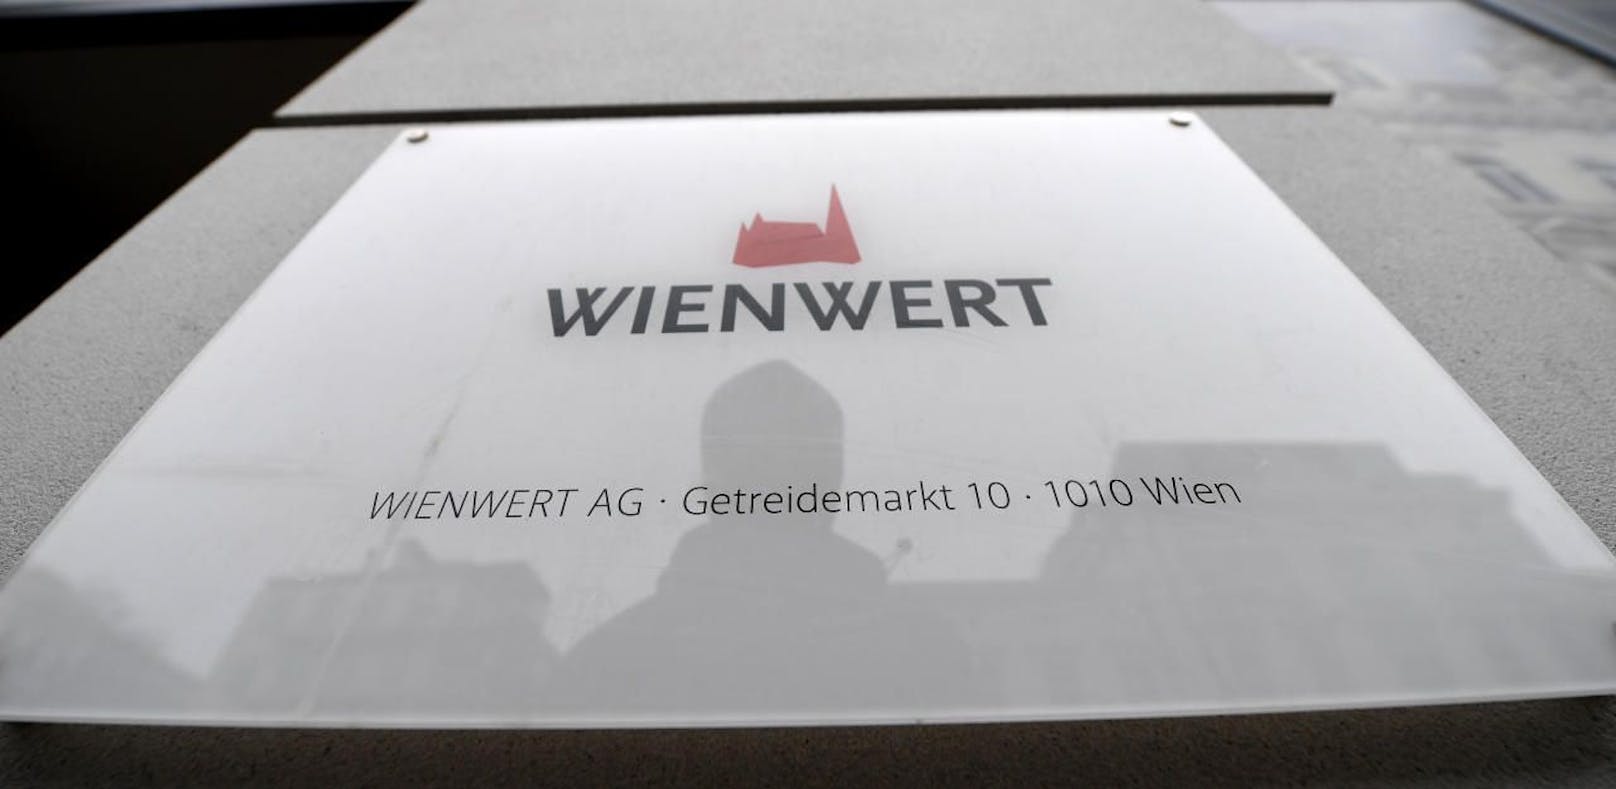 Die Wienwert-Mutter WW Holding AG ist nun Gegenstand eines Konkursverfahrens.